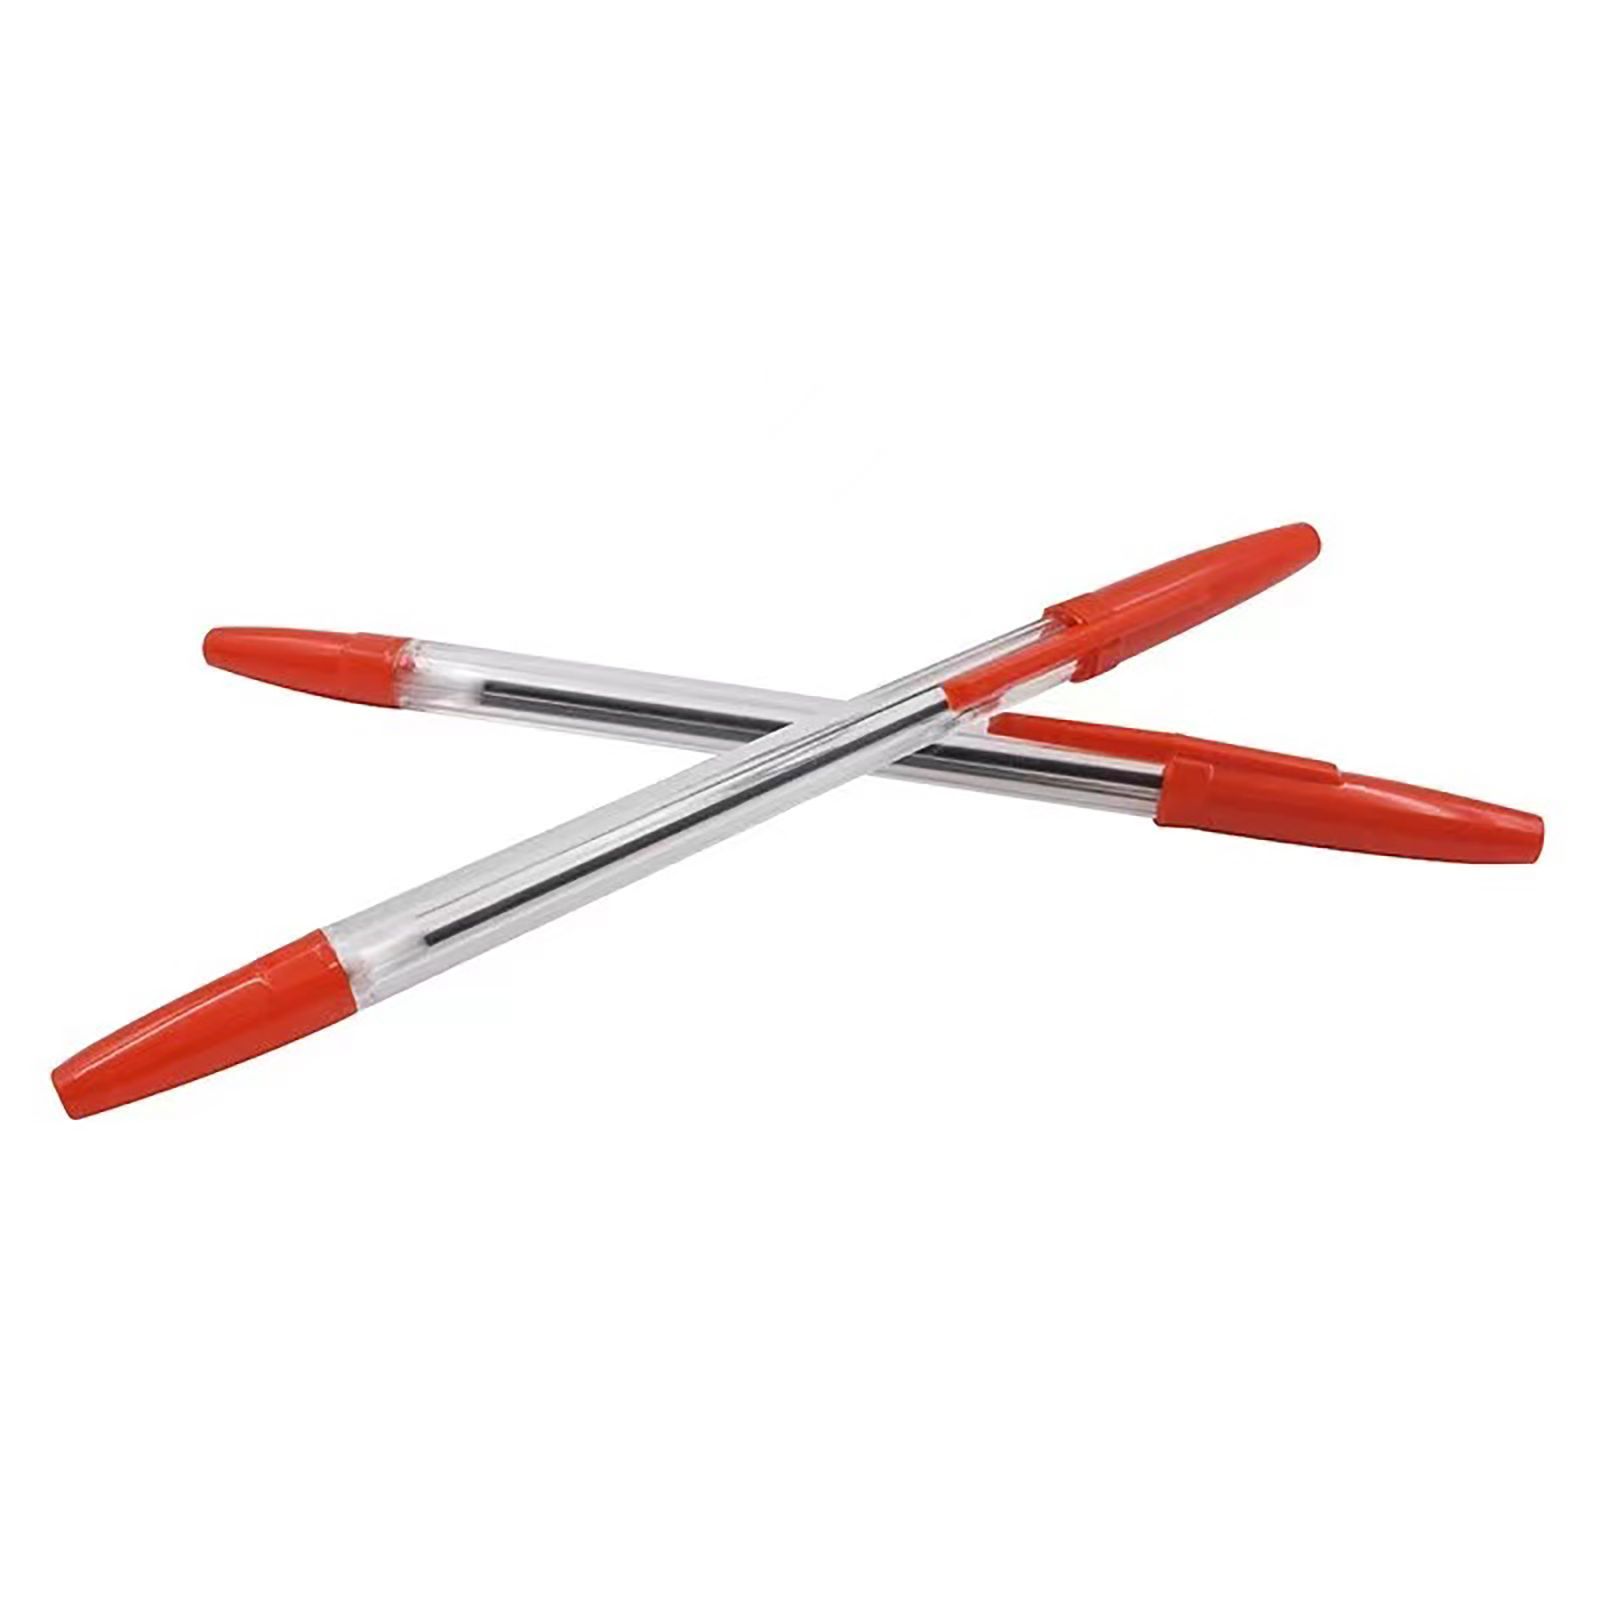 Am the pens red. Ручки масляные красные. Красные шариковые ручки. Картинки красных жирных ручек. Used Pen.